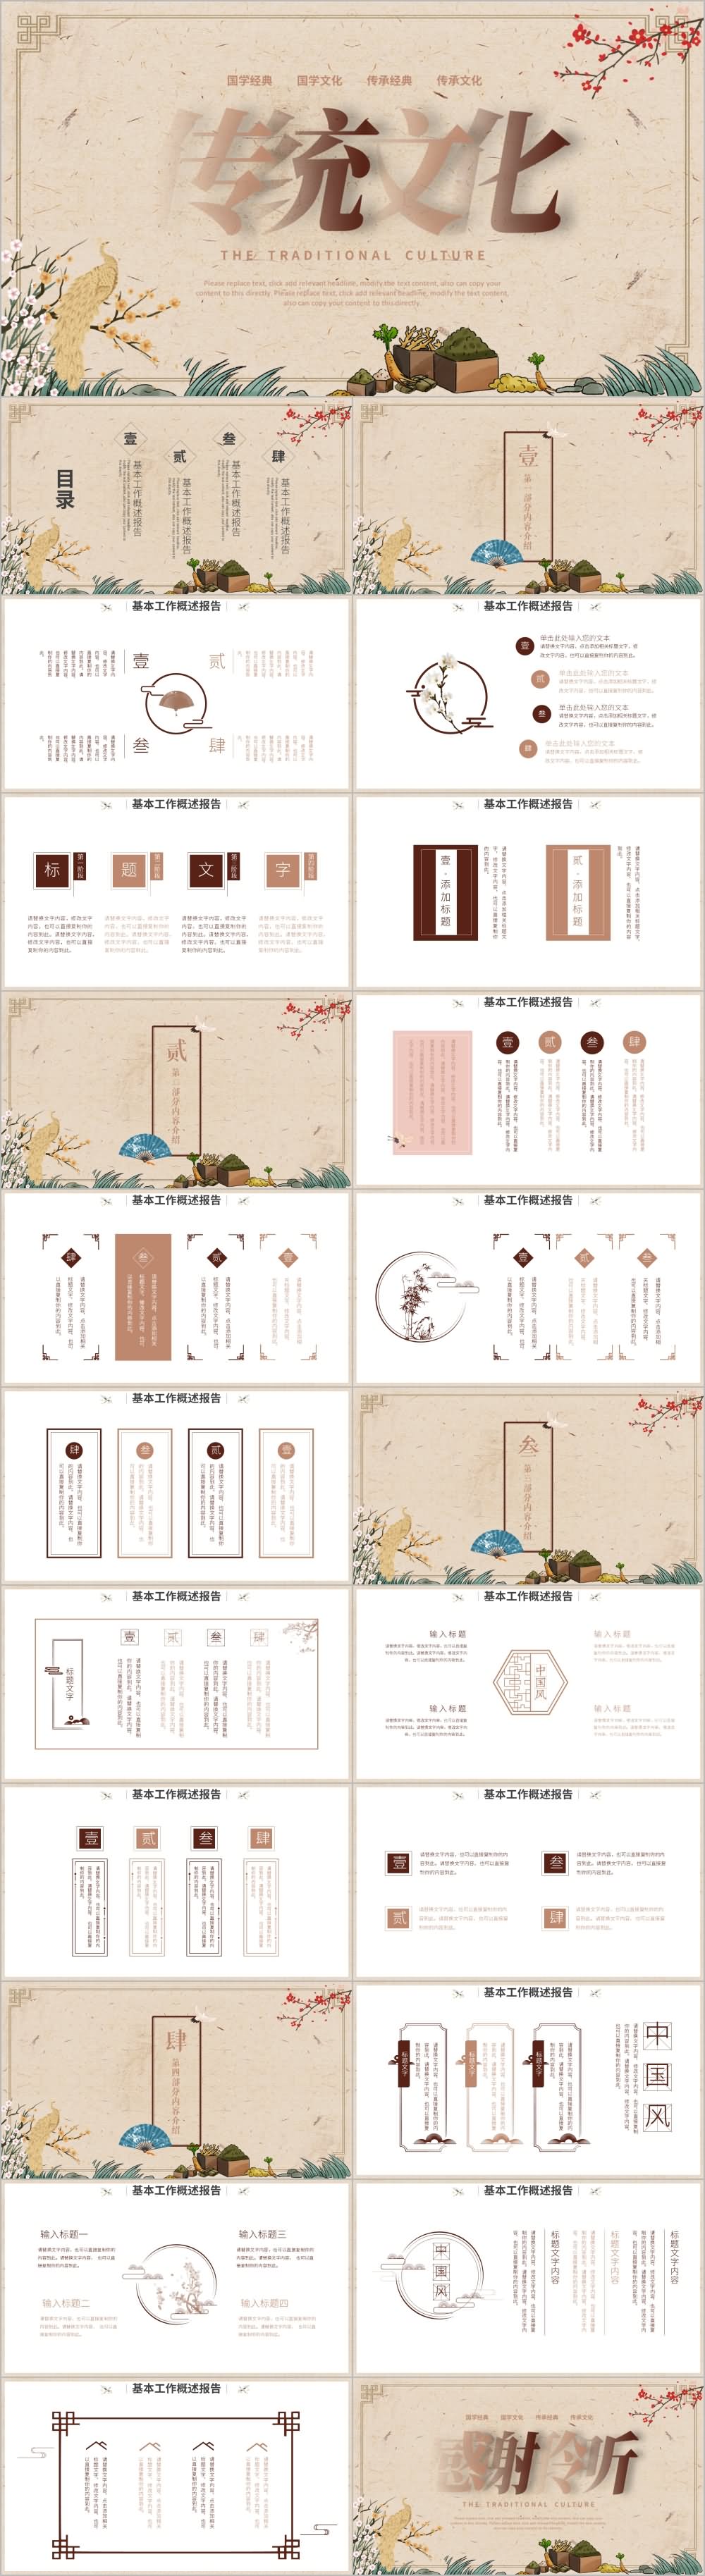 古风水墨中国风国学传统文化PPT模板